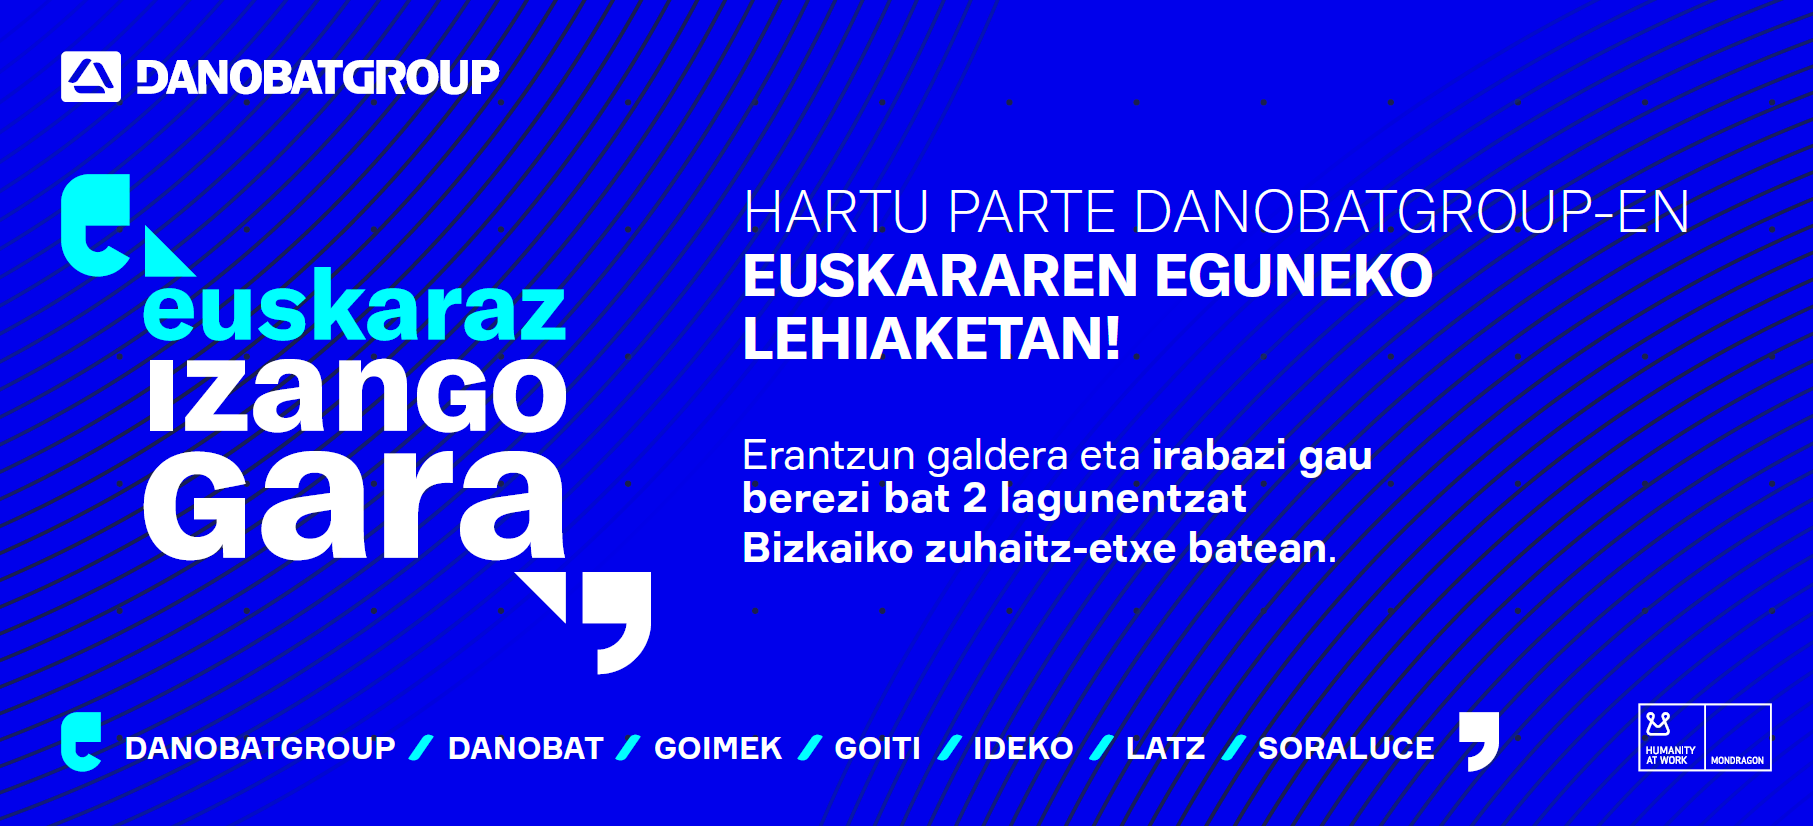 Danobatgroup lanza el concurso del día del euskera bajo el eslogan "euskaraz izango gara"